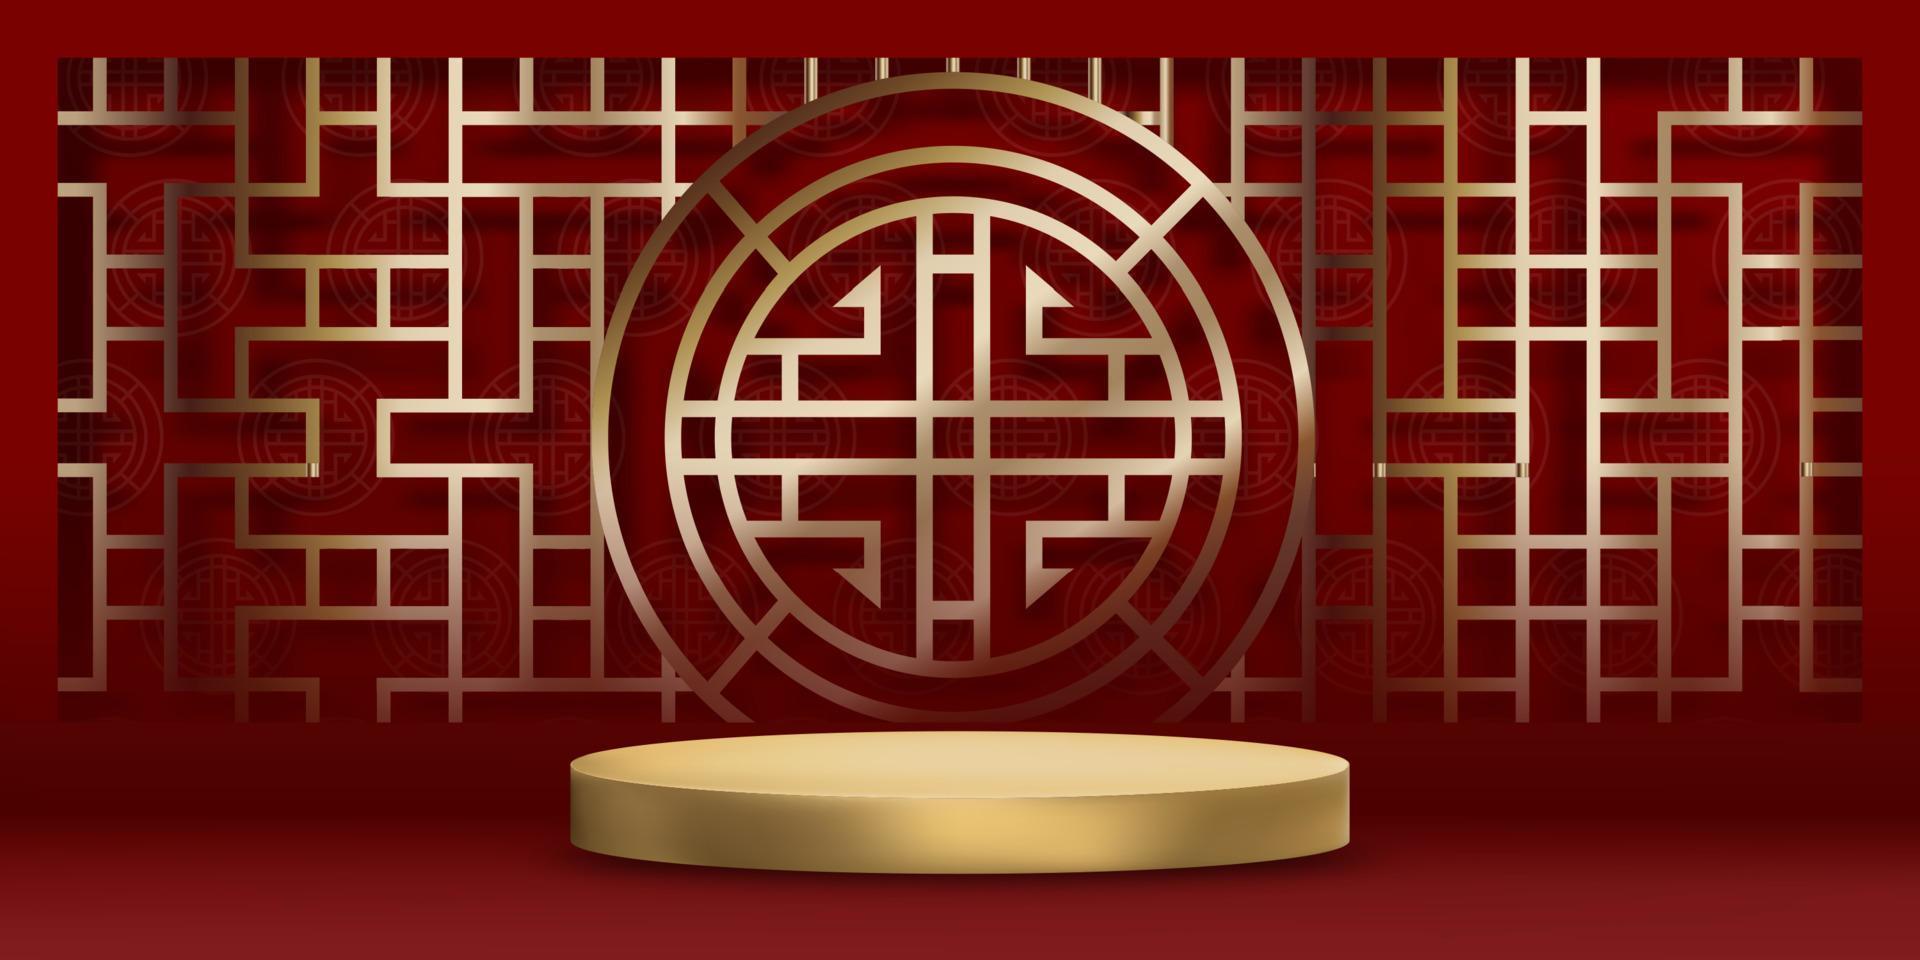 Chinees Nieuwjaar achtergrond, rode studio kamer podium met maan papier gesneden op witte muur achtergrond, vector illustratie 3d lege galerij met stand display of plank, banner ontwerp voor producten presentatie